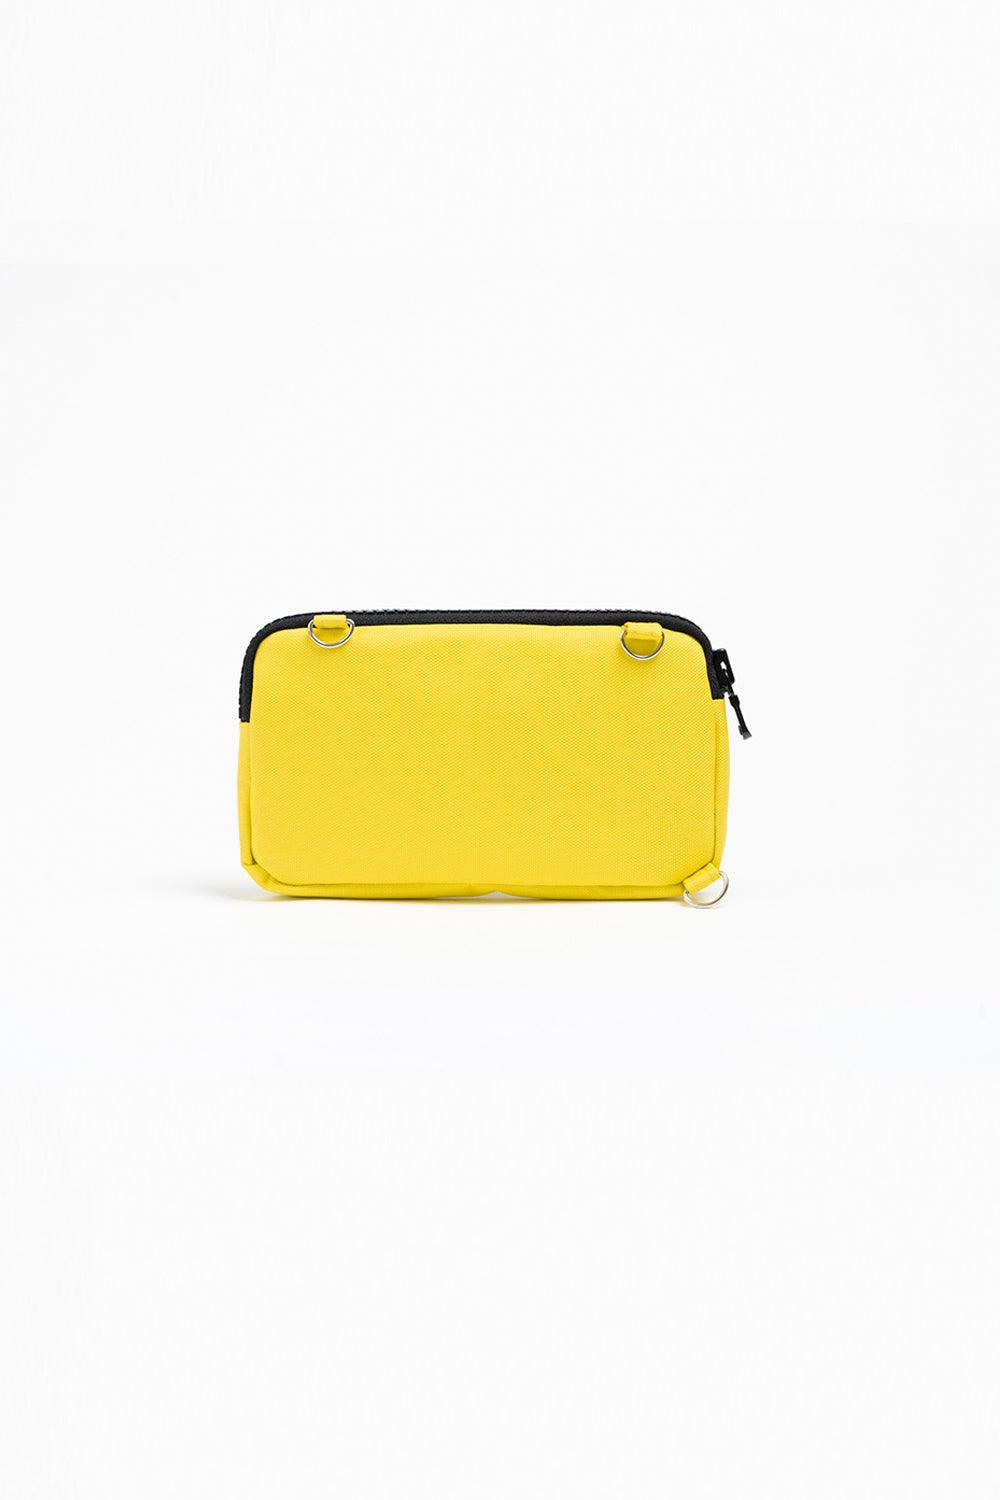 Muni Bum Bag | Phone Bag Yellow 4 | Milagron